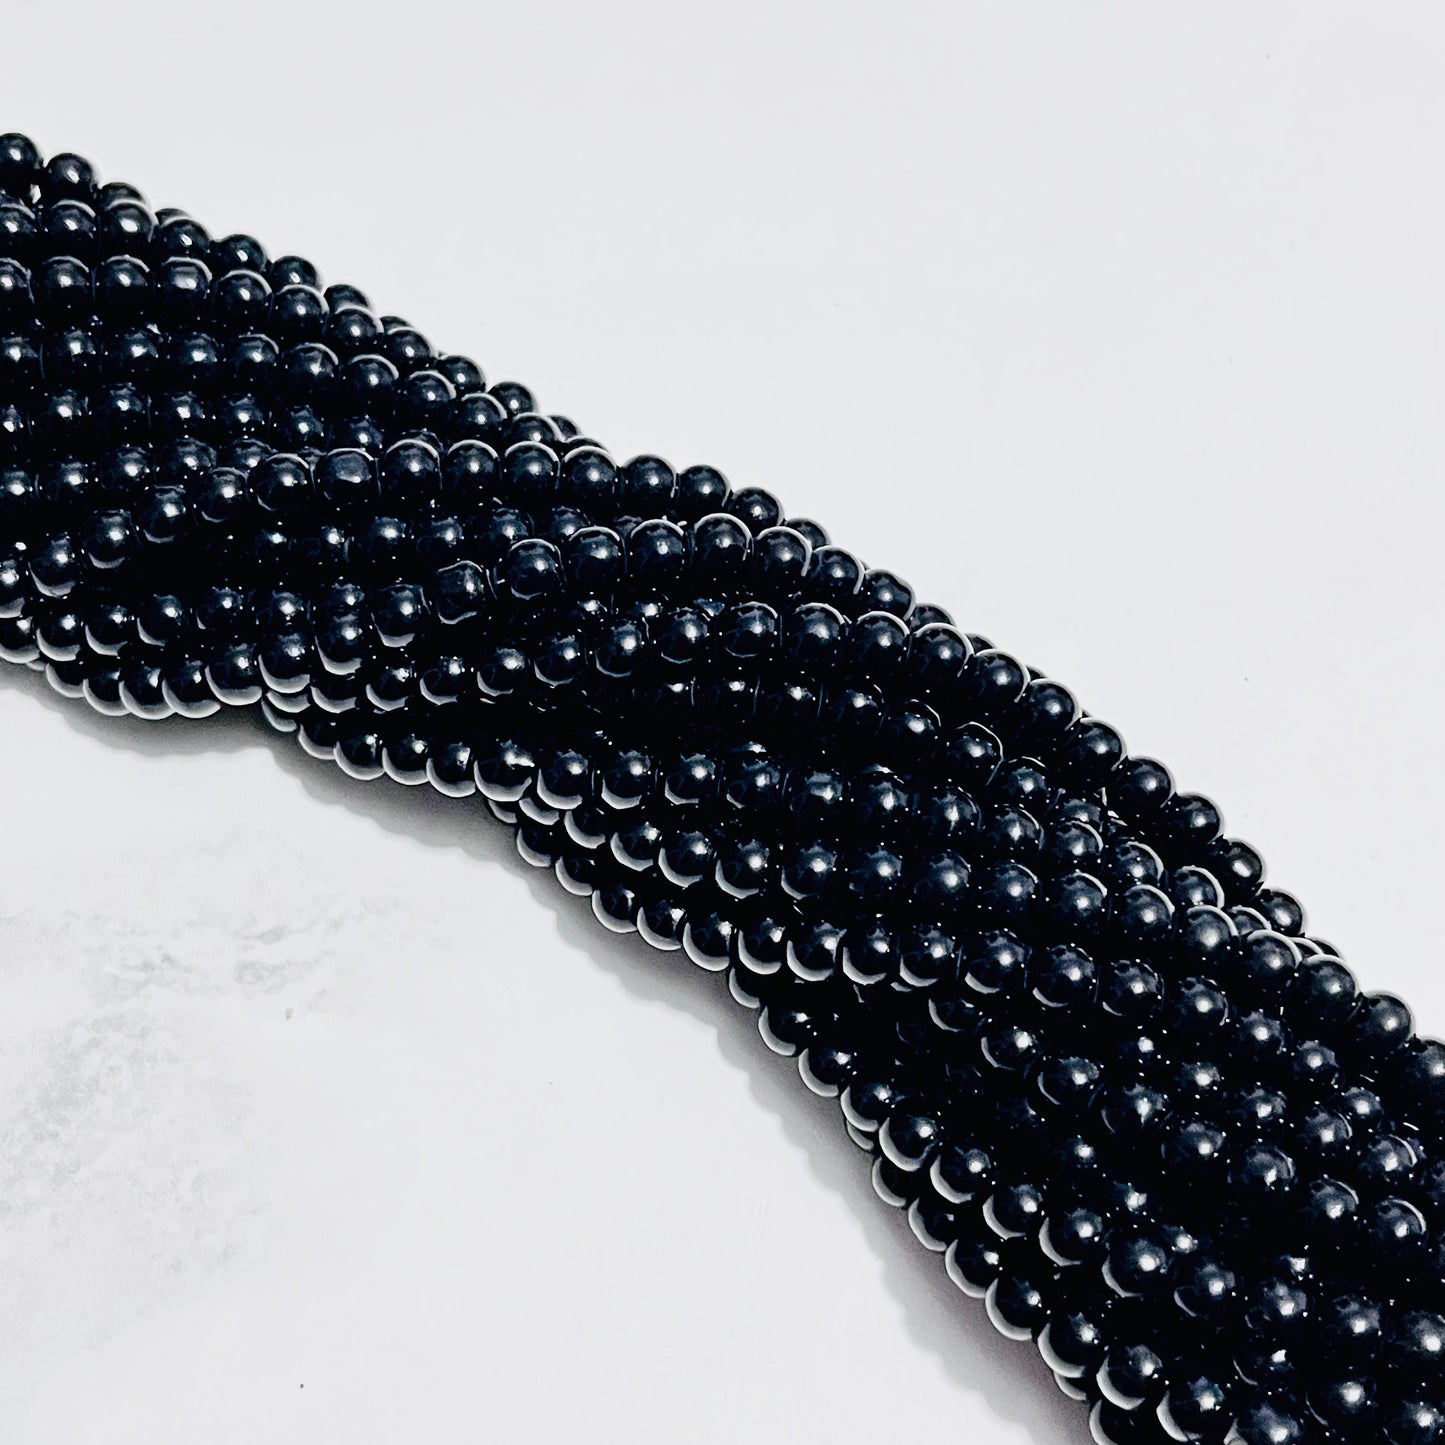 500 piezas de perla sintética en color negro #6